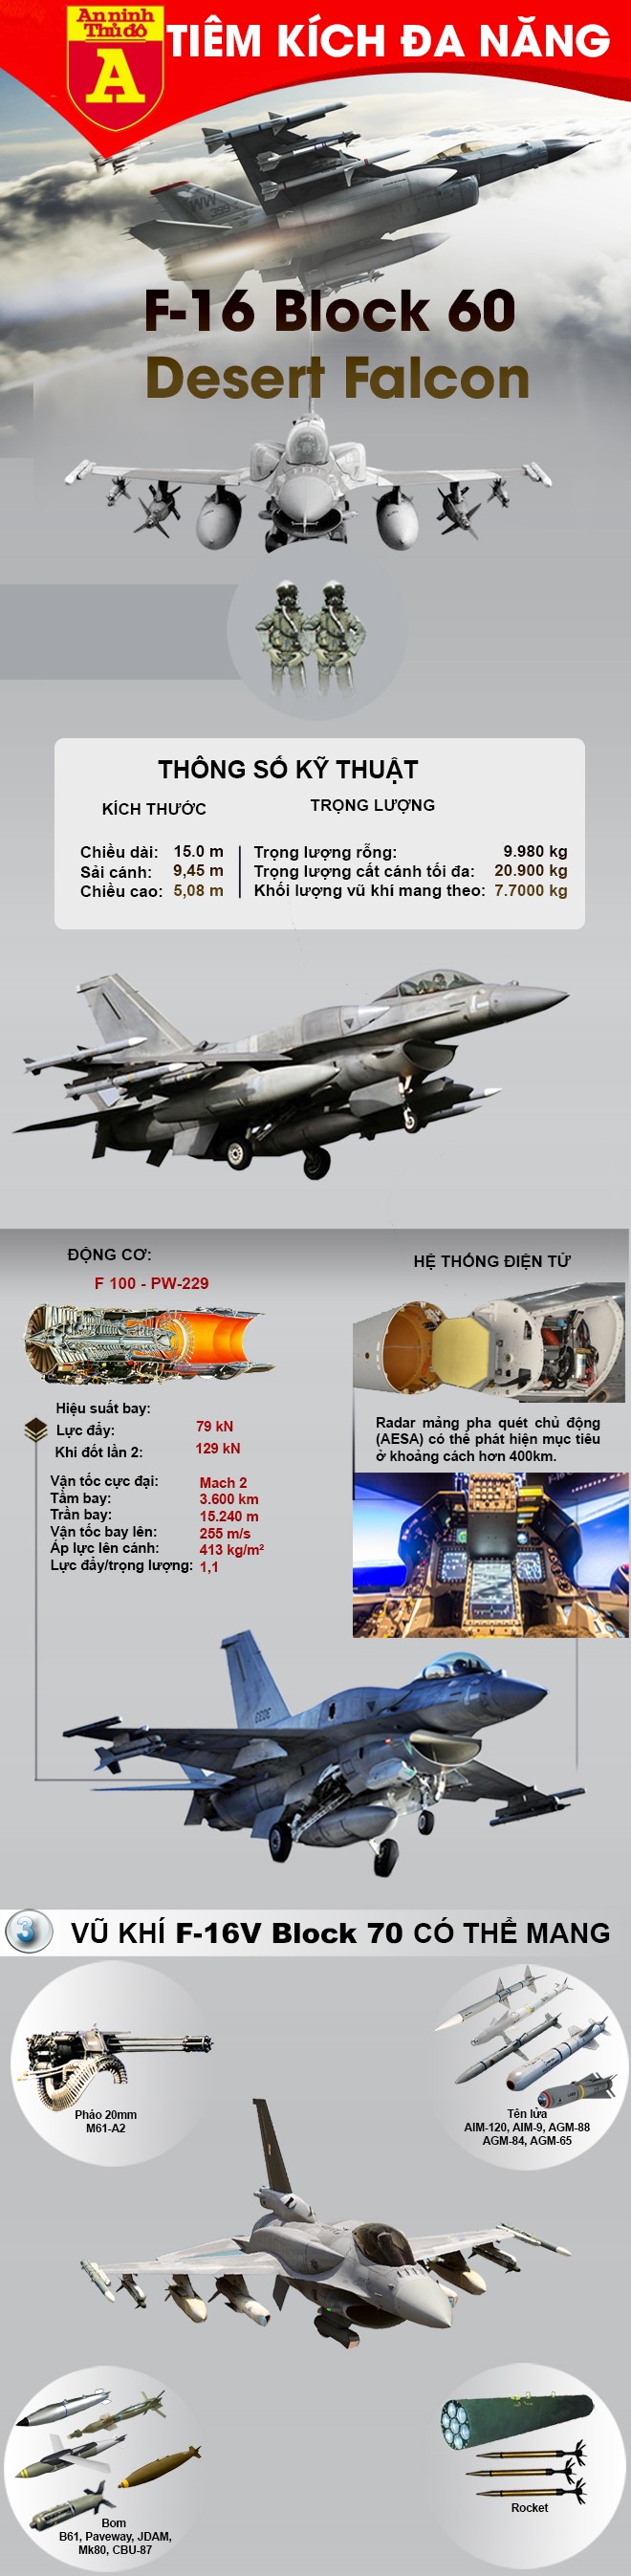 [Infographic] Phiến quân hồi giáo sử dụng tên lửa Nga sản xuất bắn trúng F-15 nhưng lại "vồ hụt" F-16 ảnh 3